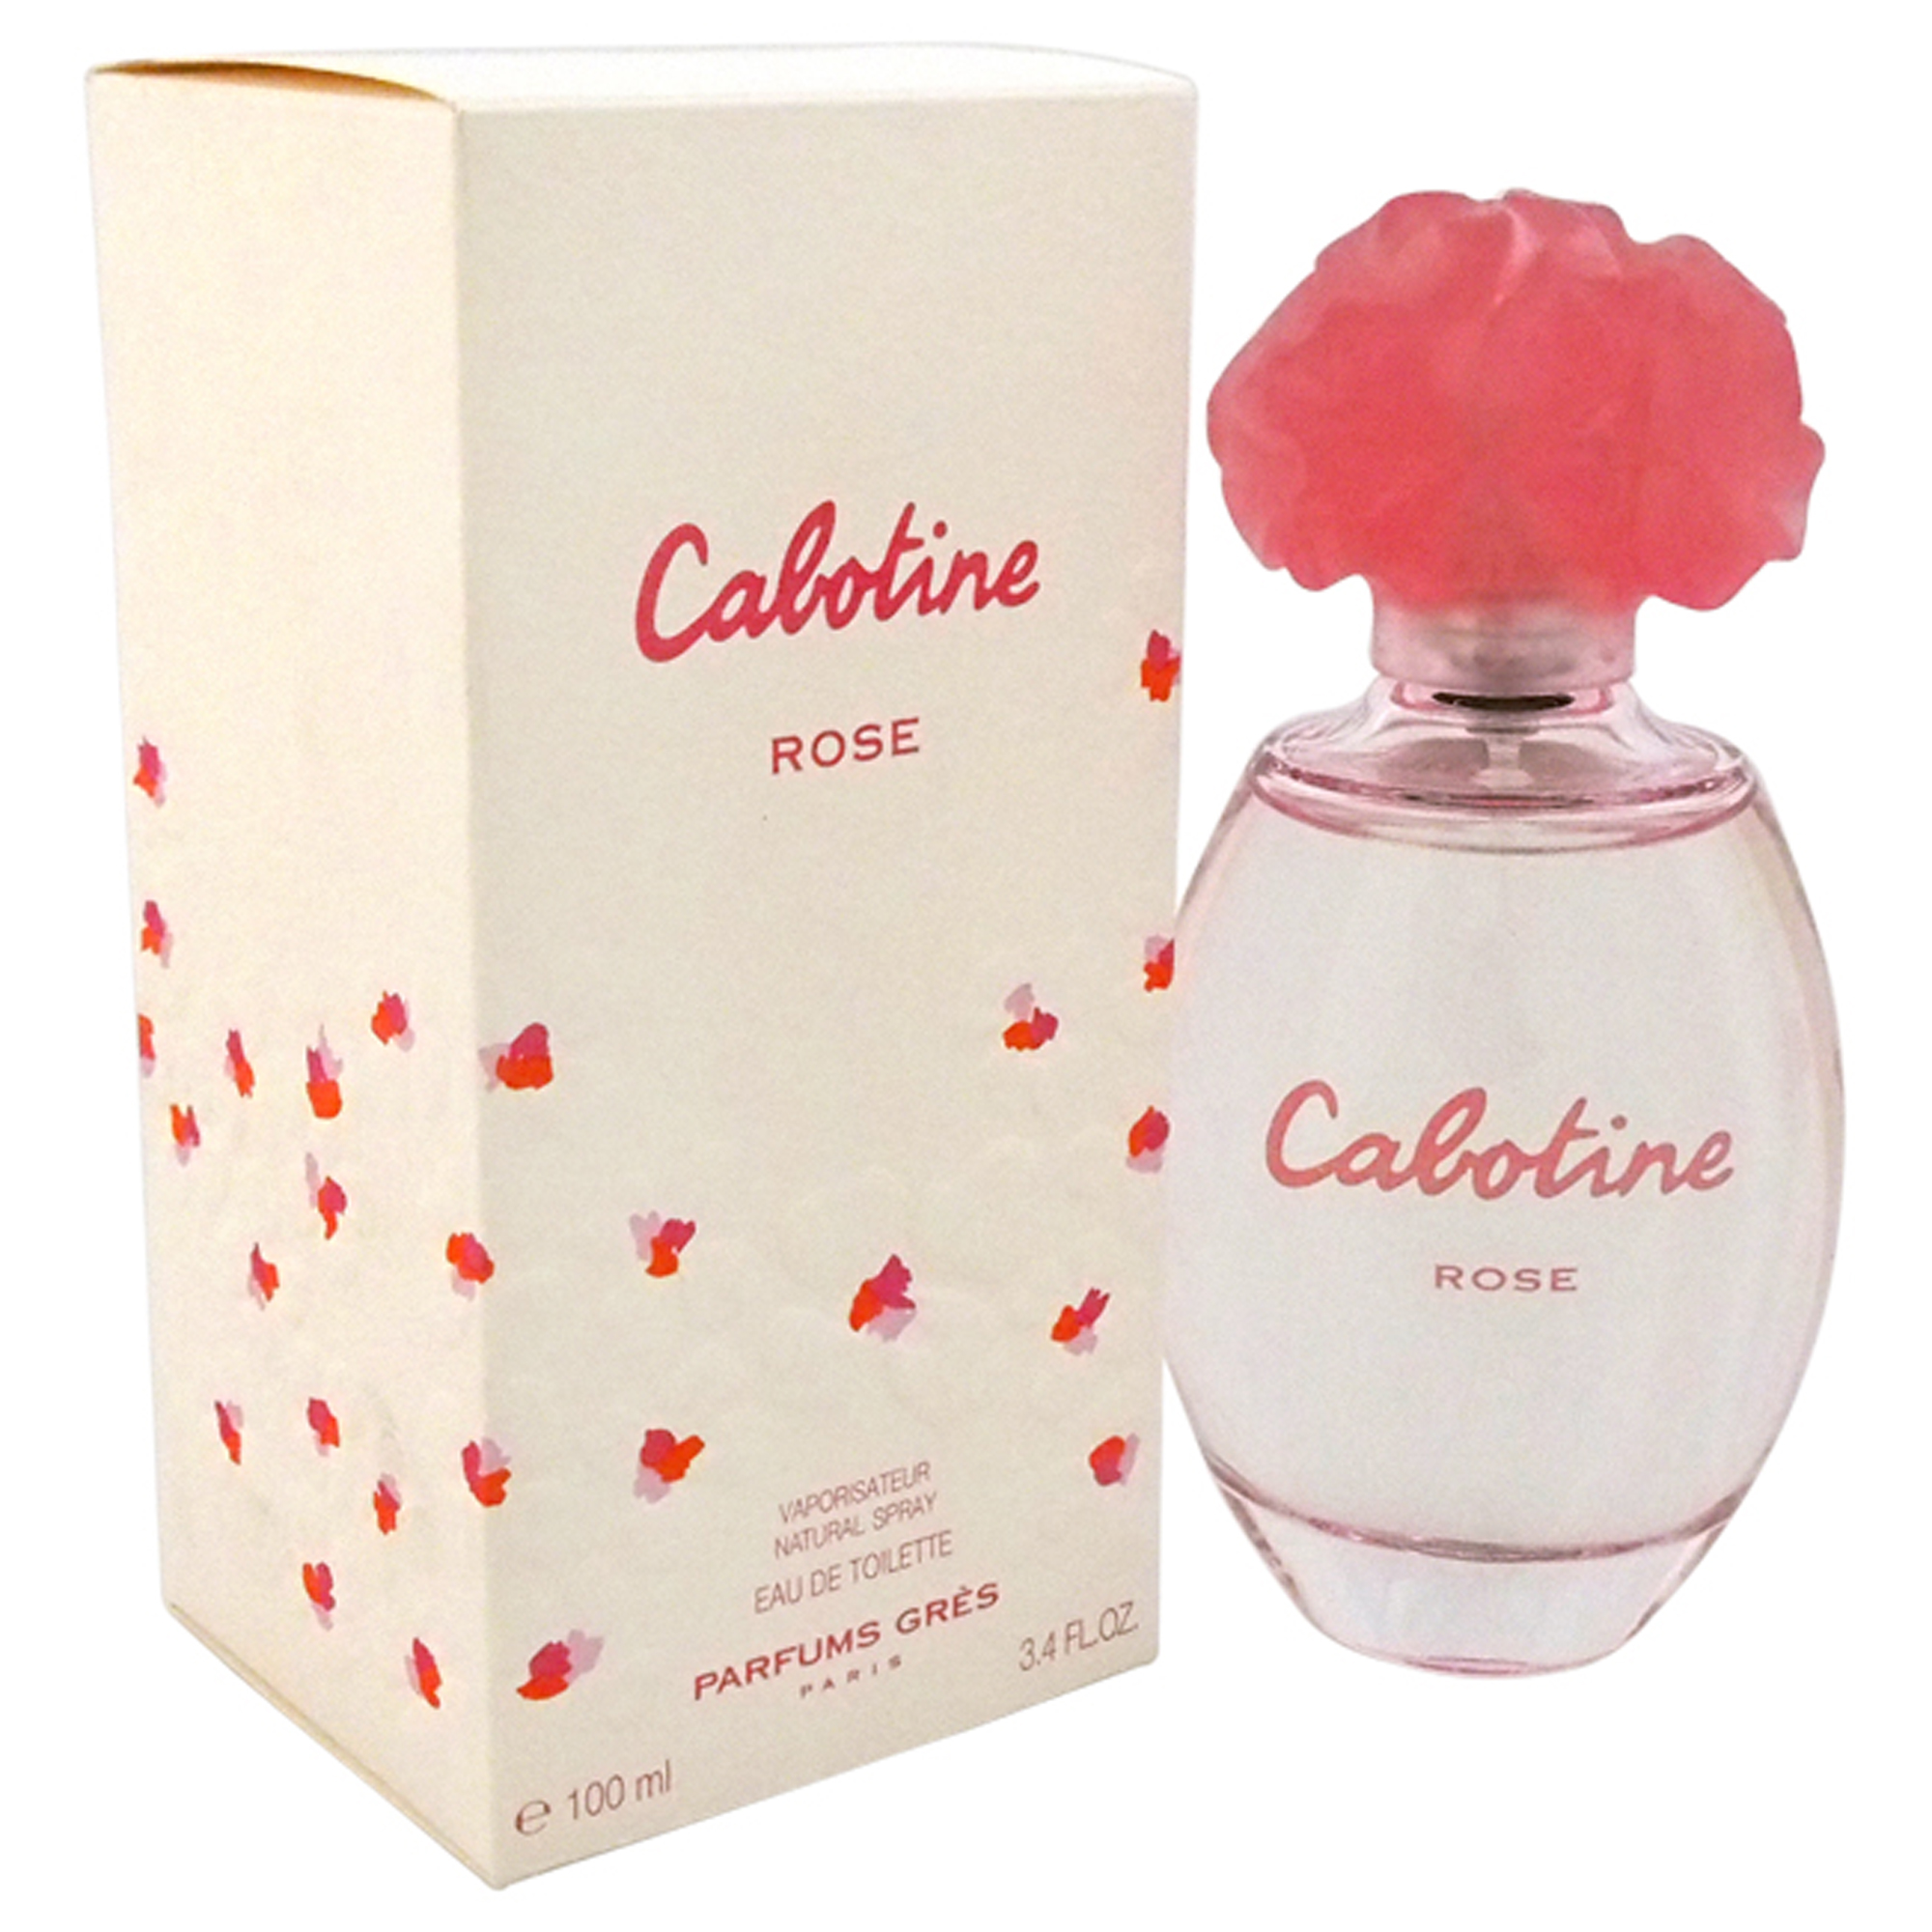 Cabotine Rose by Parfums Gres for Women - 3&period;4 oz Eau de Toilette